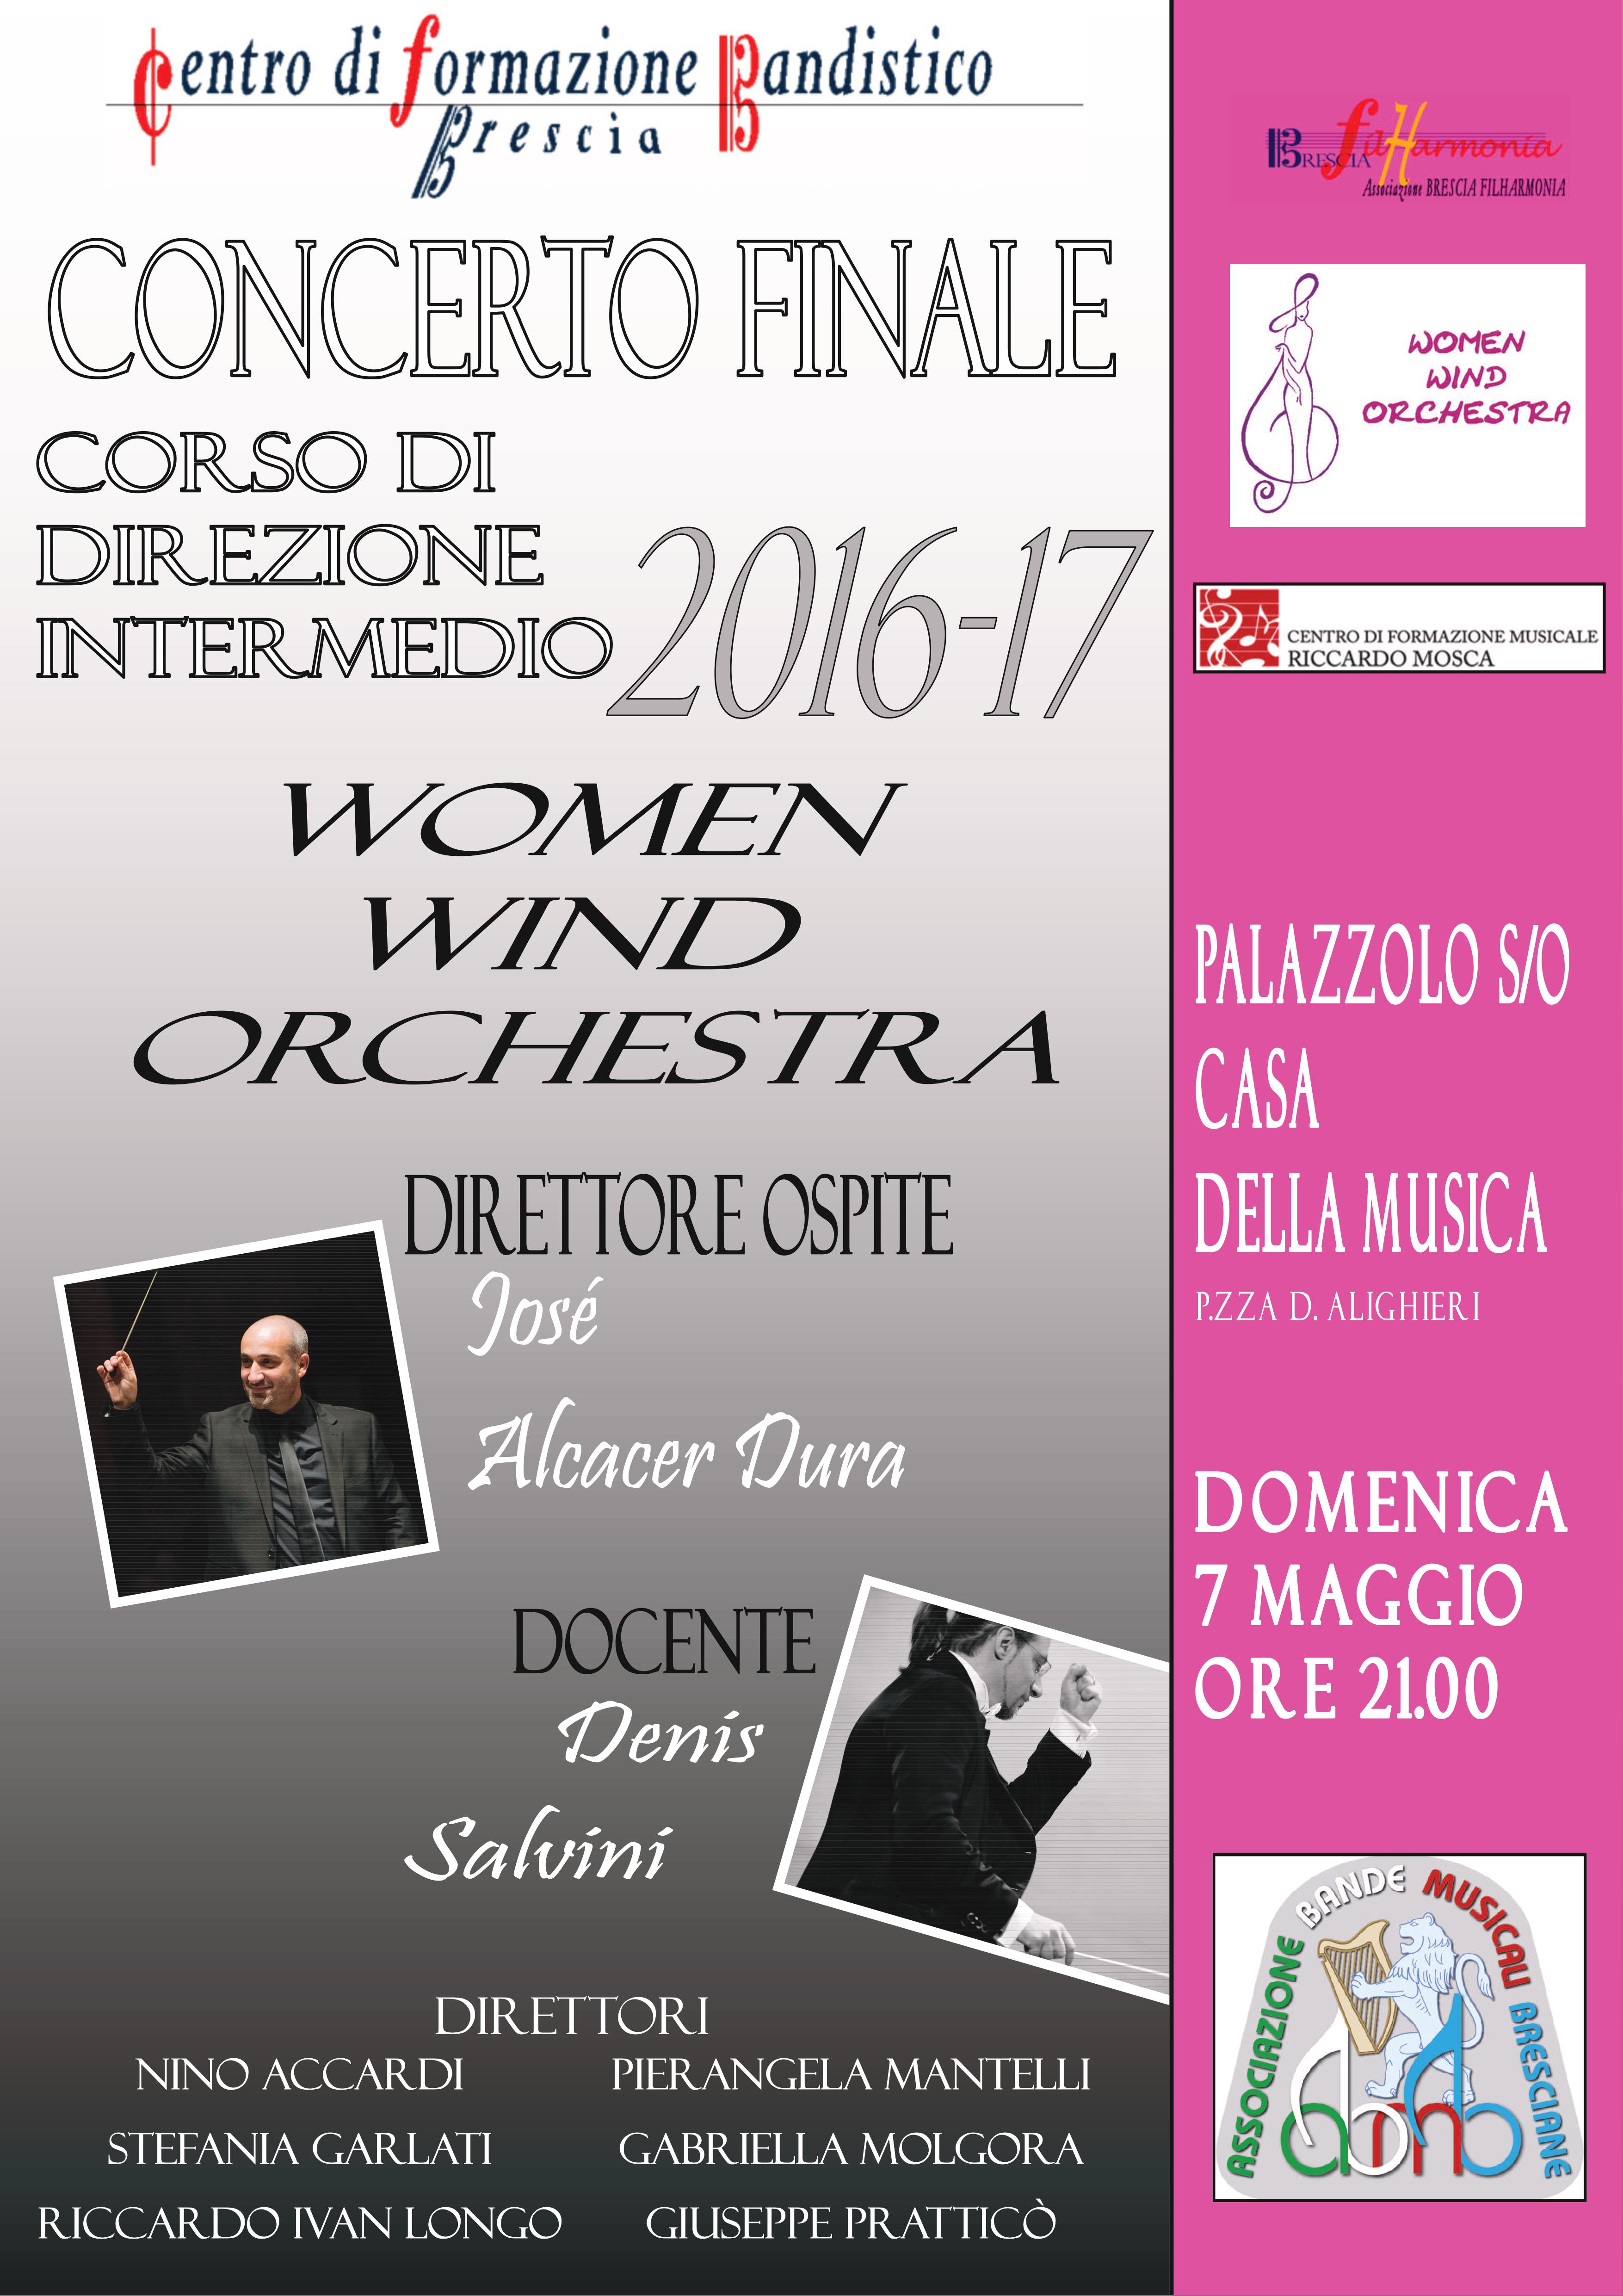 07/05 – Concerto finale CORSO DI DIREZIONE INTERMEDIO